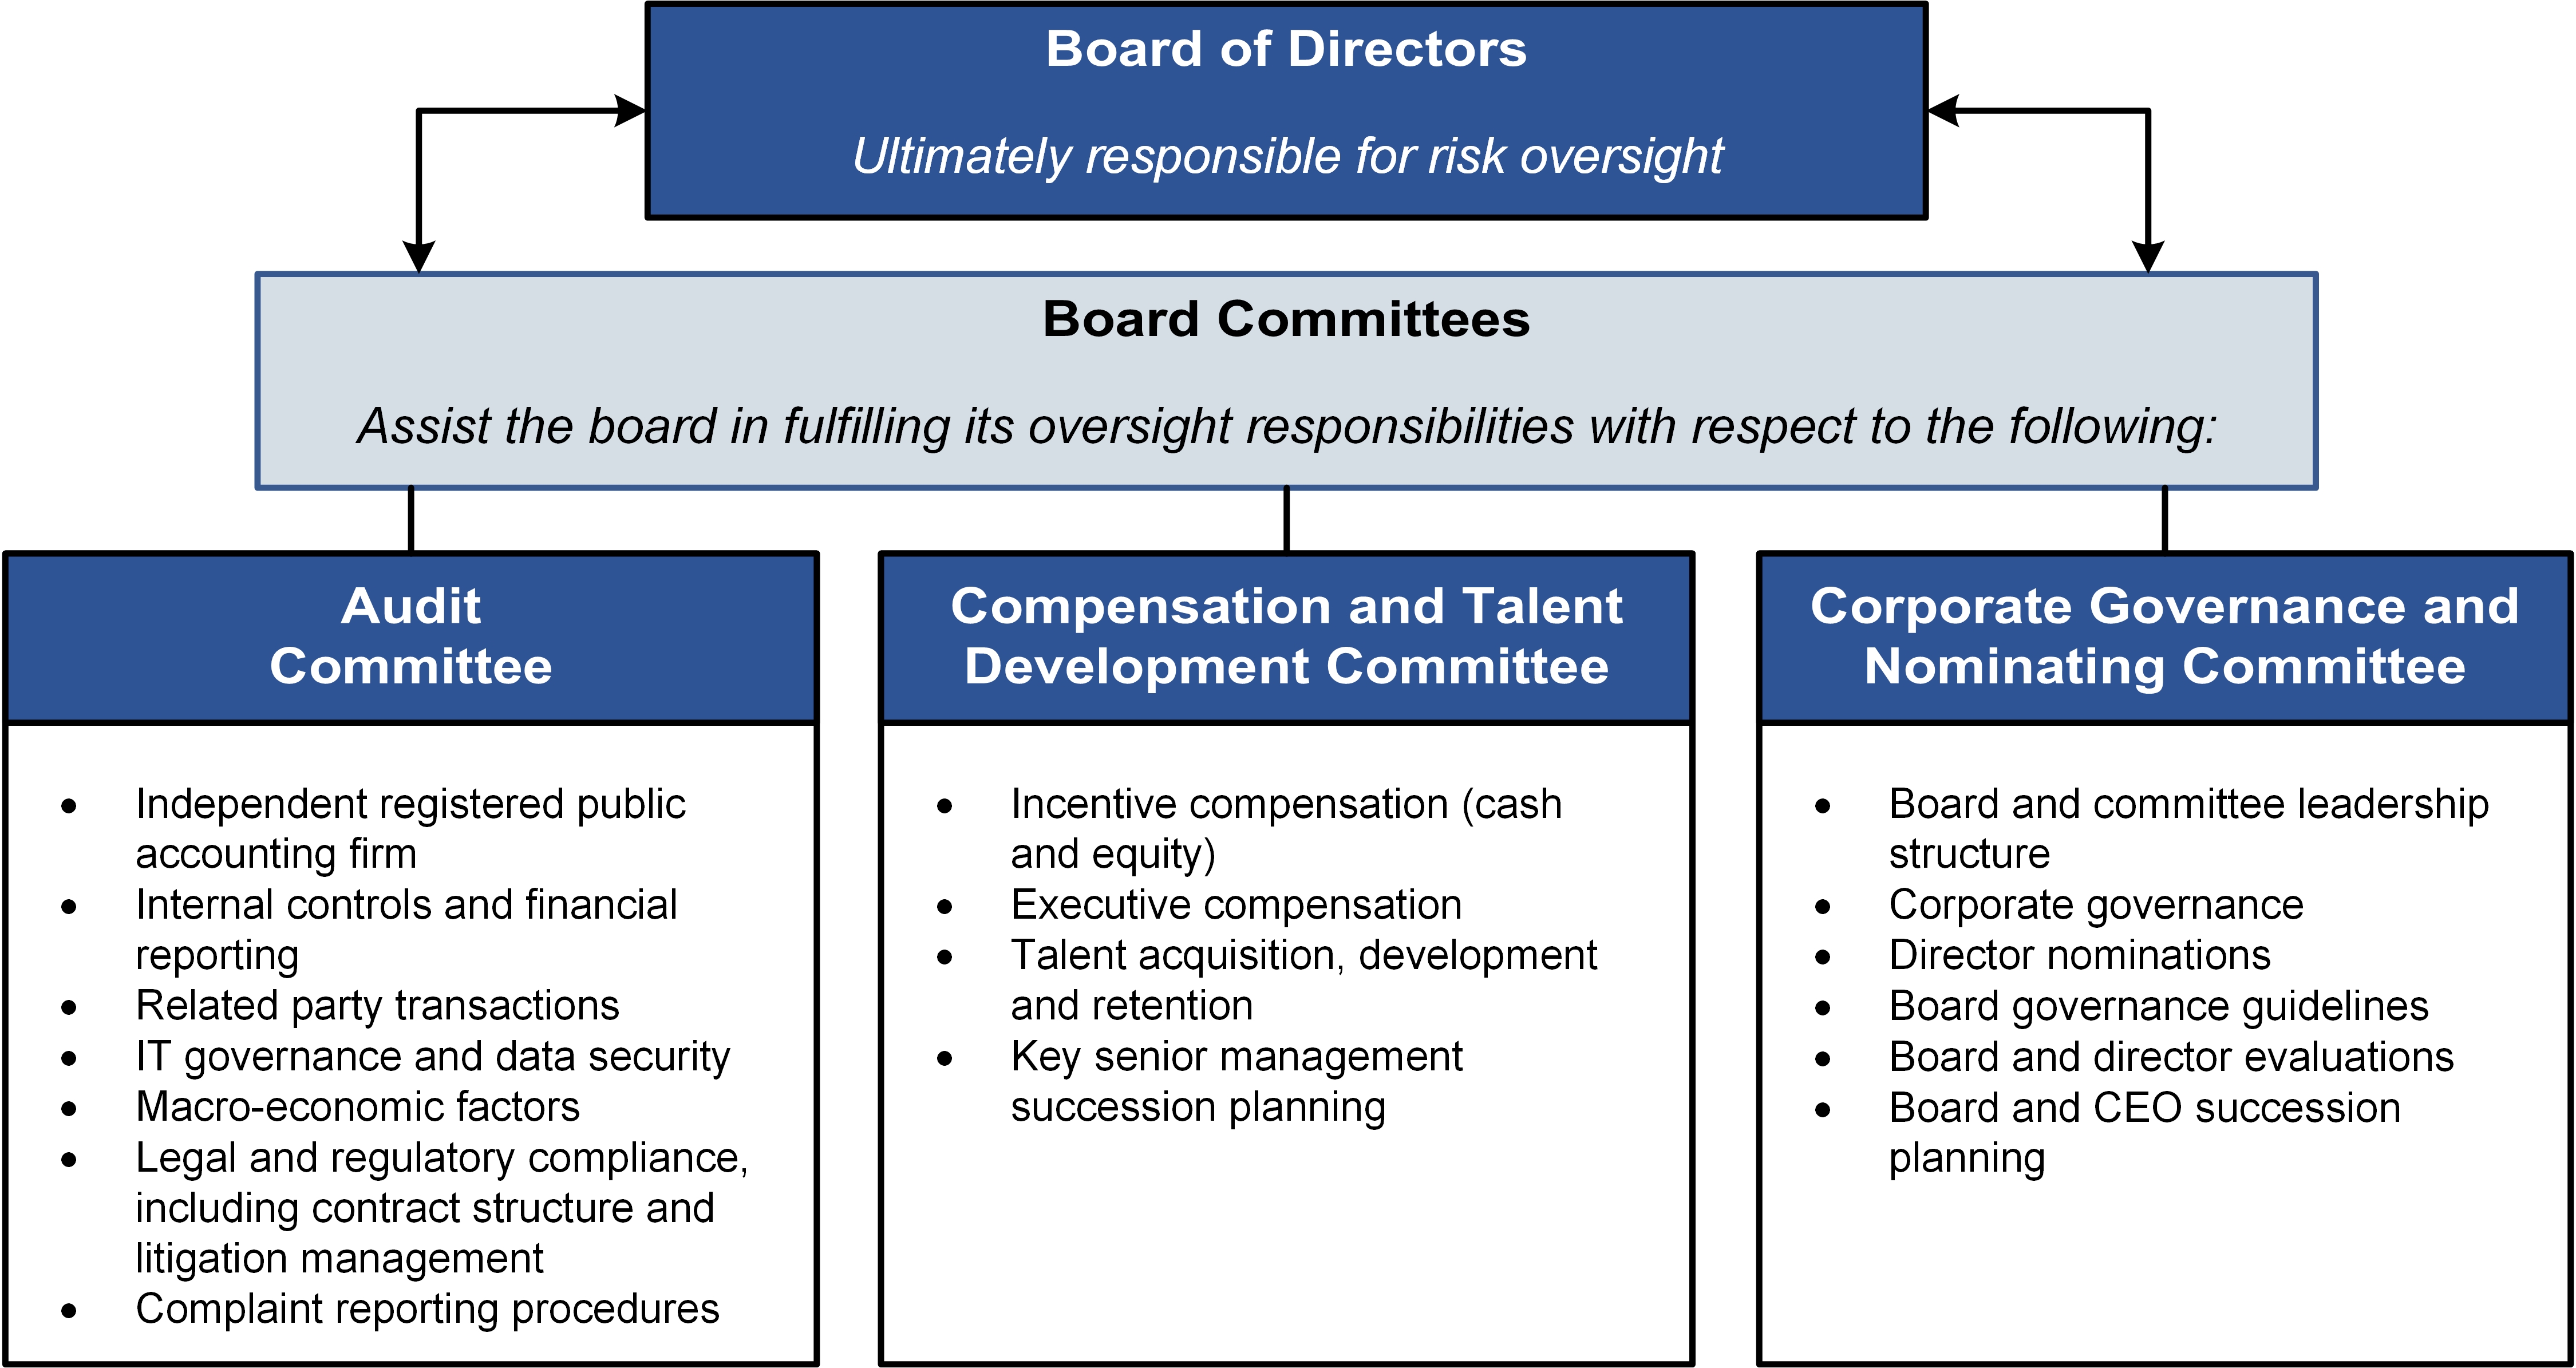 boardcommittees2.jpg